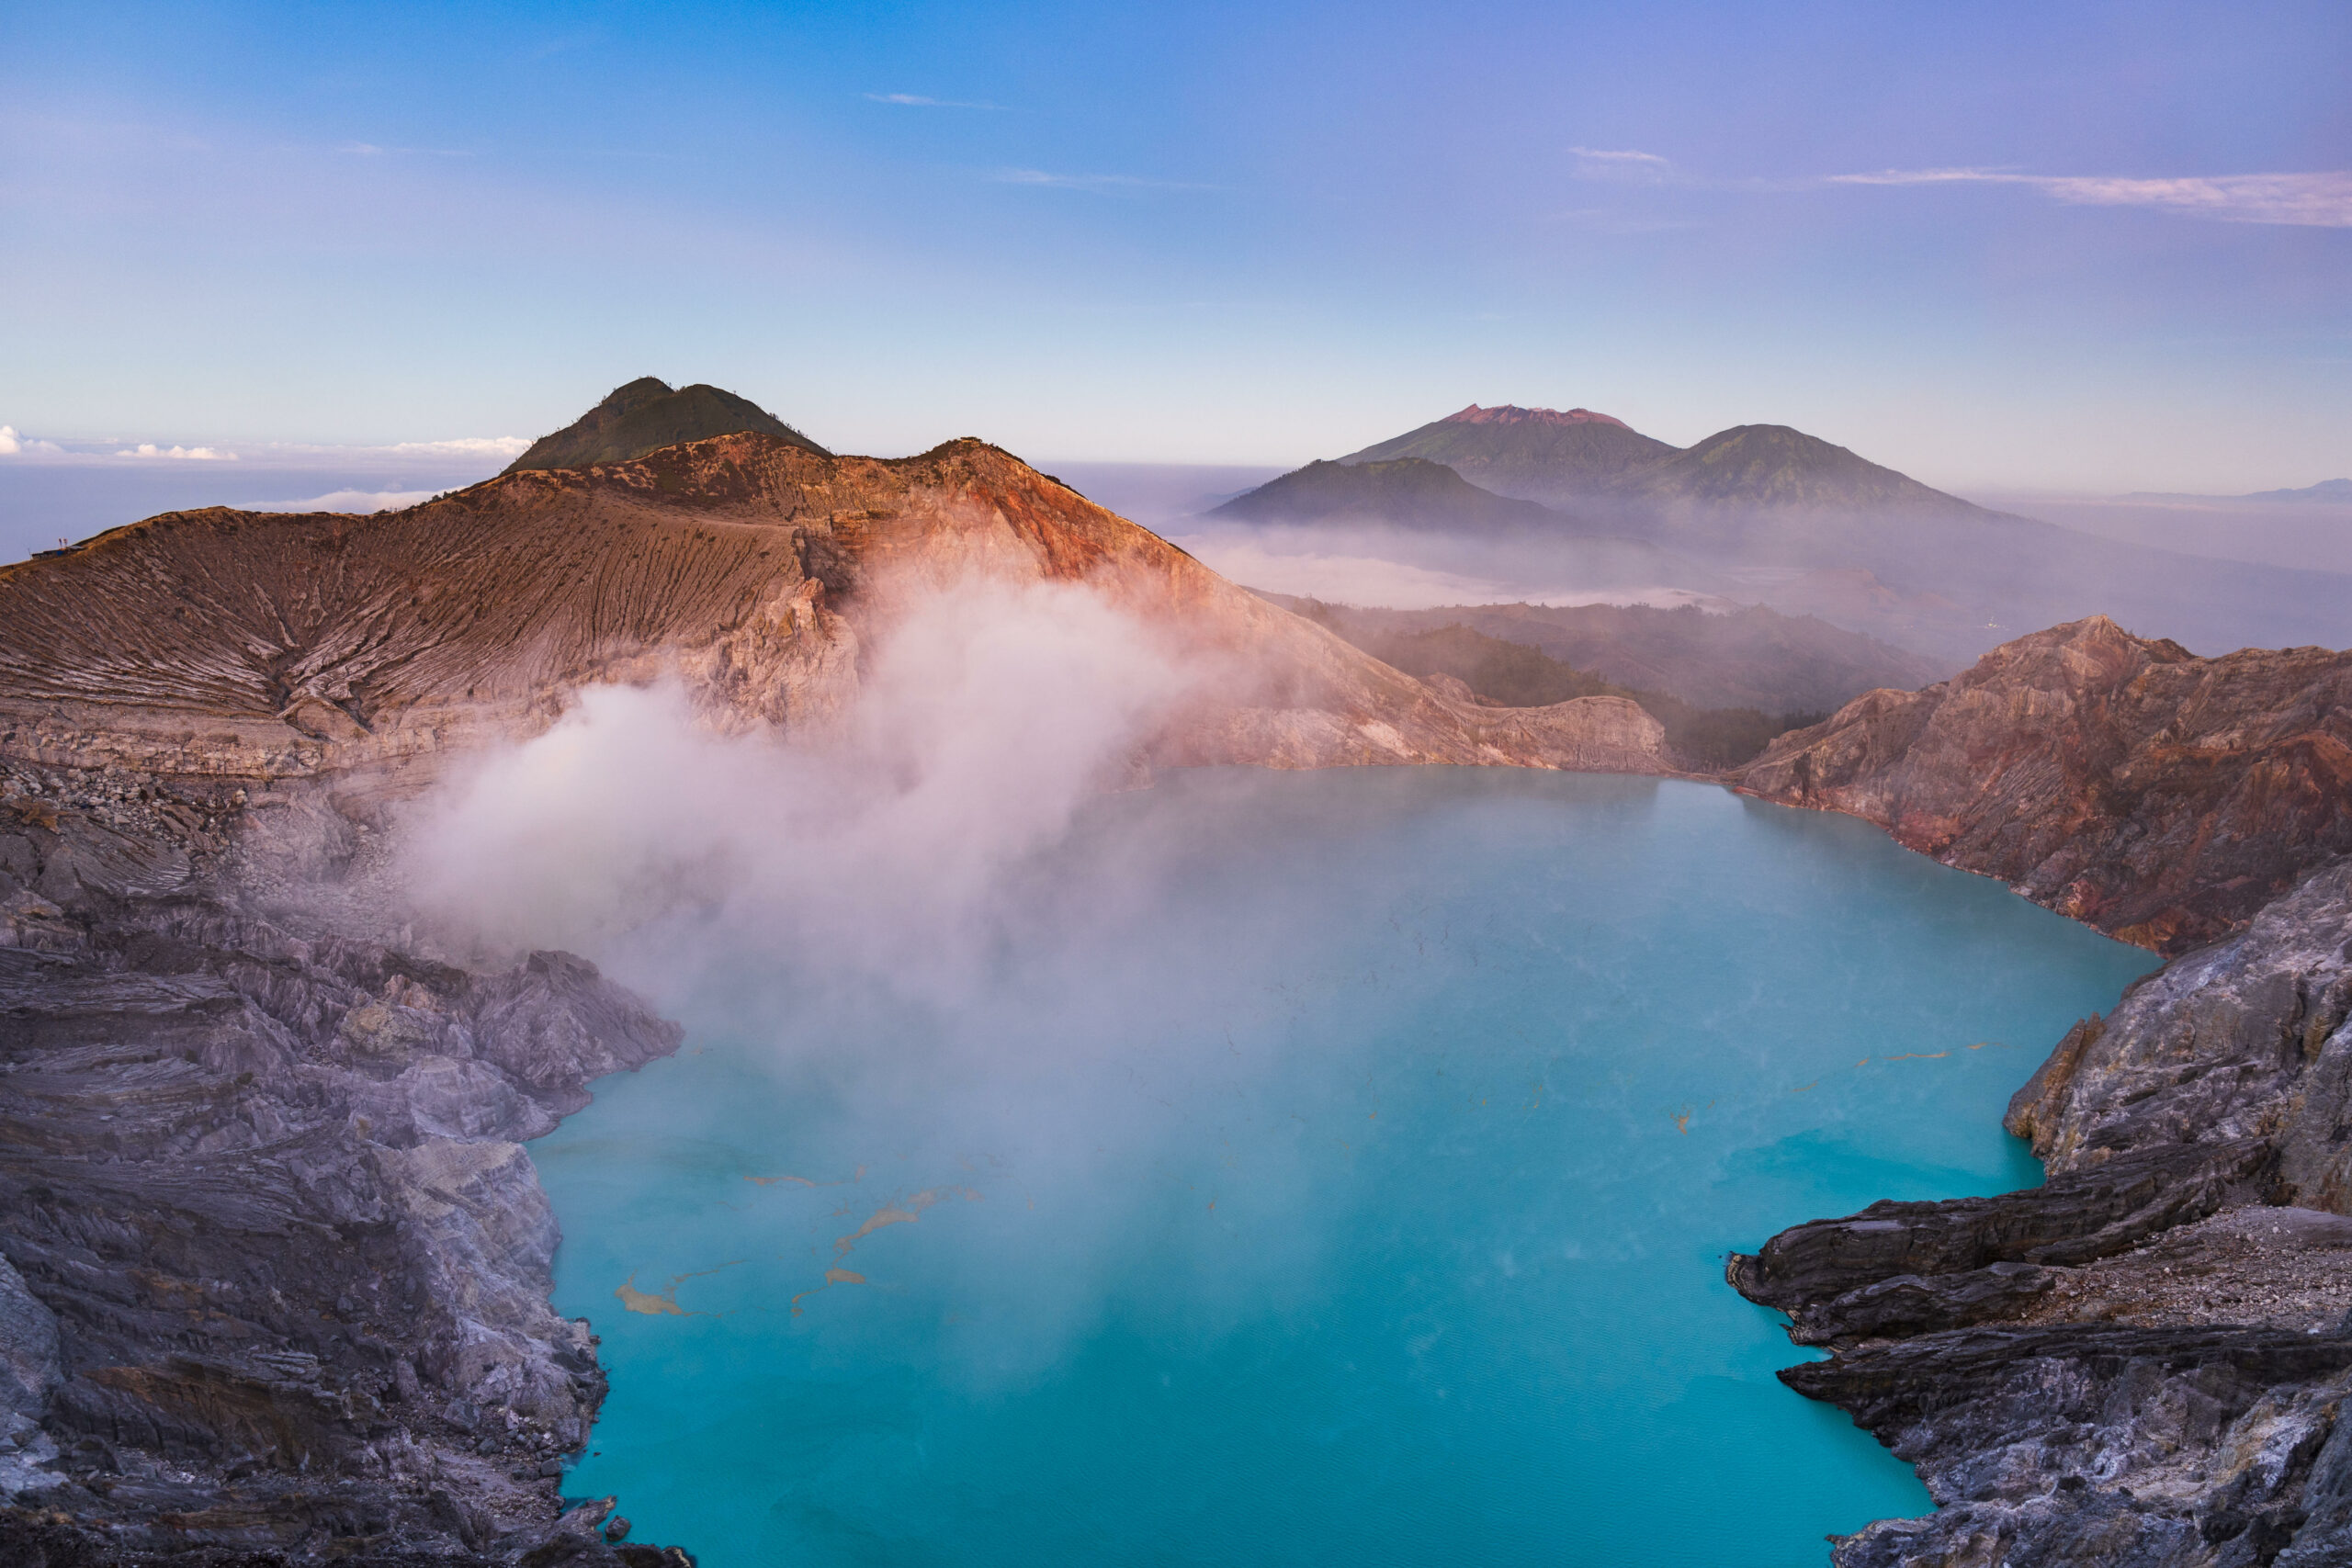 Beliebtes Fotomotiv: Der rund 2700 Meter hohe Ijen ist bekannt für sein „blaues Feuer“.